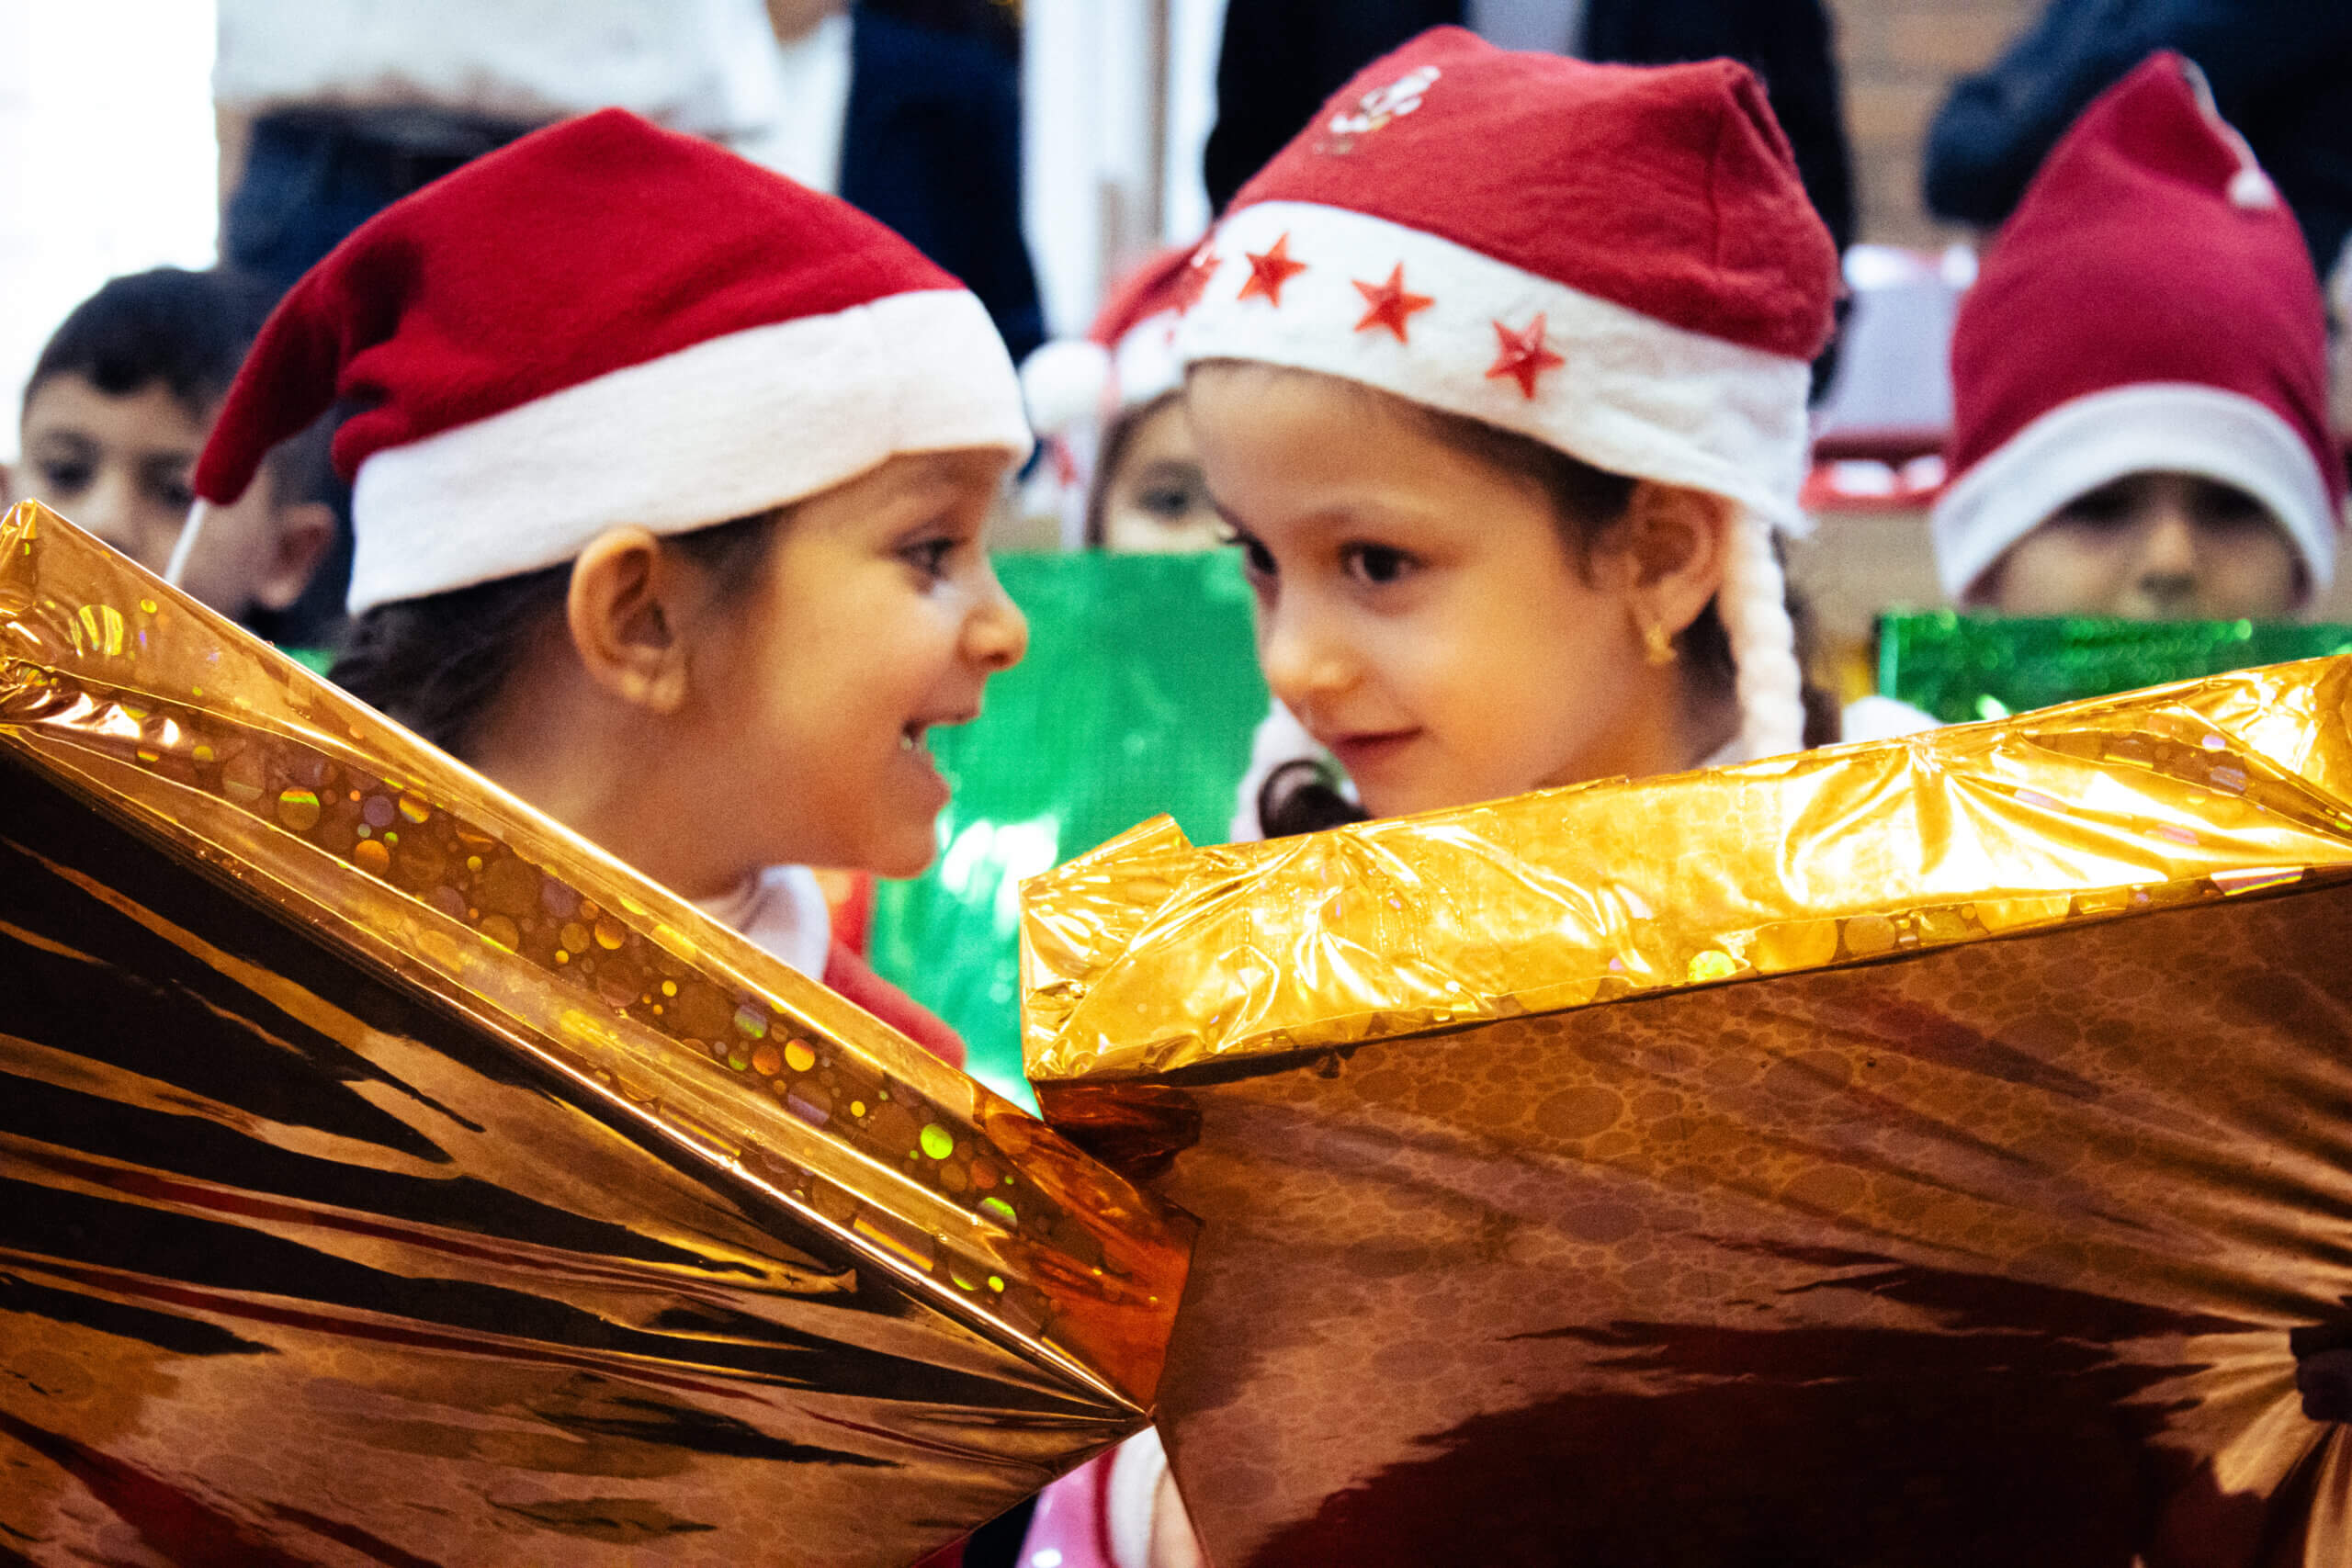 sos-chretiens-orient-irak-donation-cadeaux-noel-enfants-irakiens-plaine-de-ninive